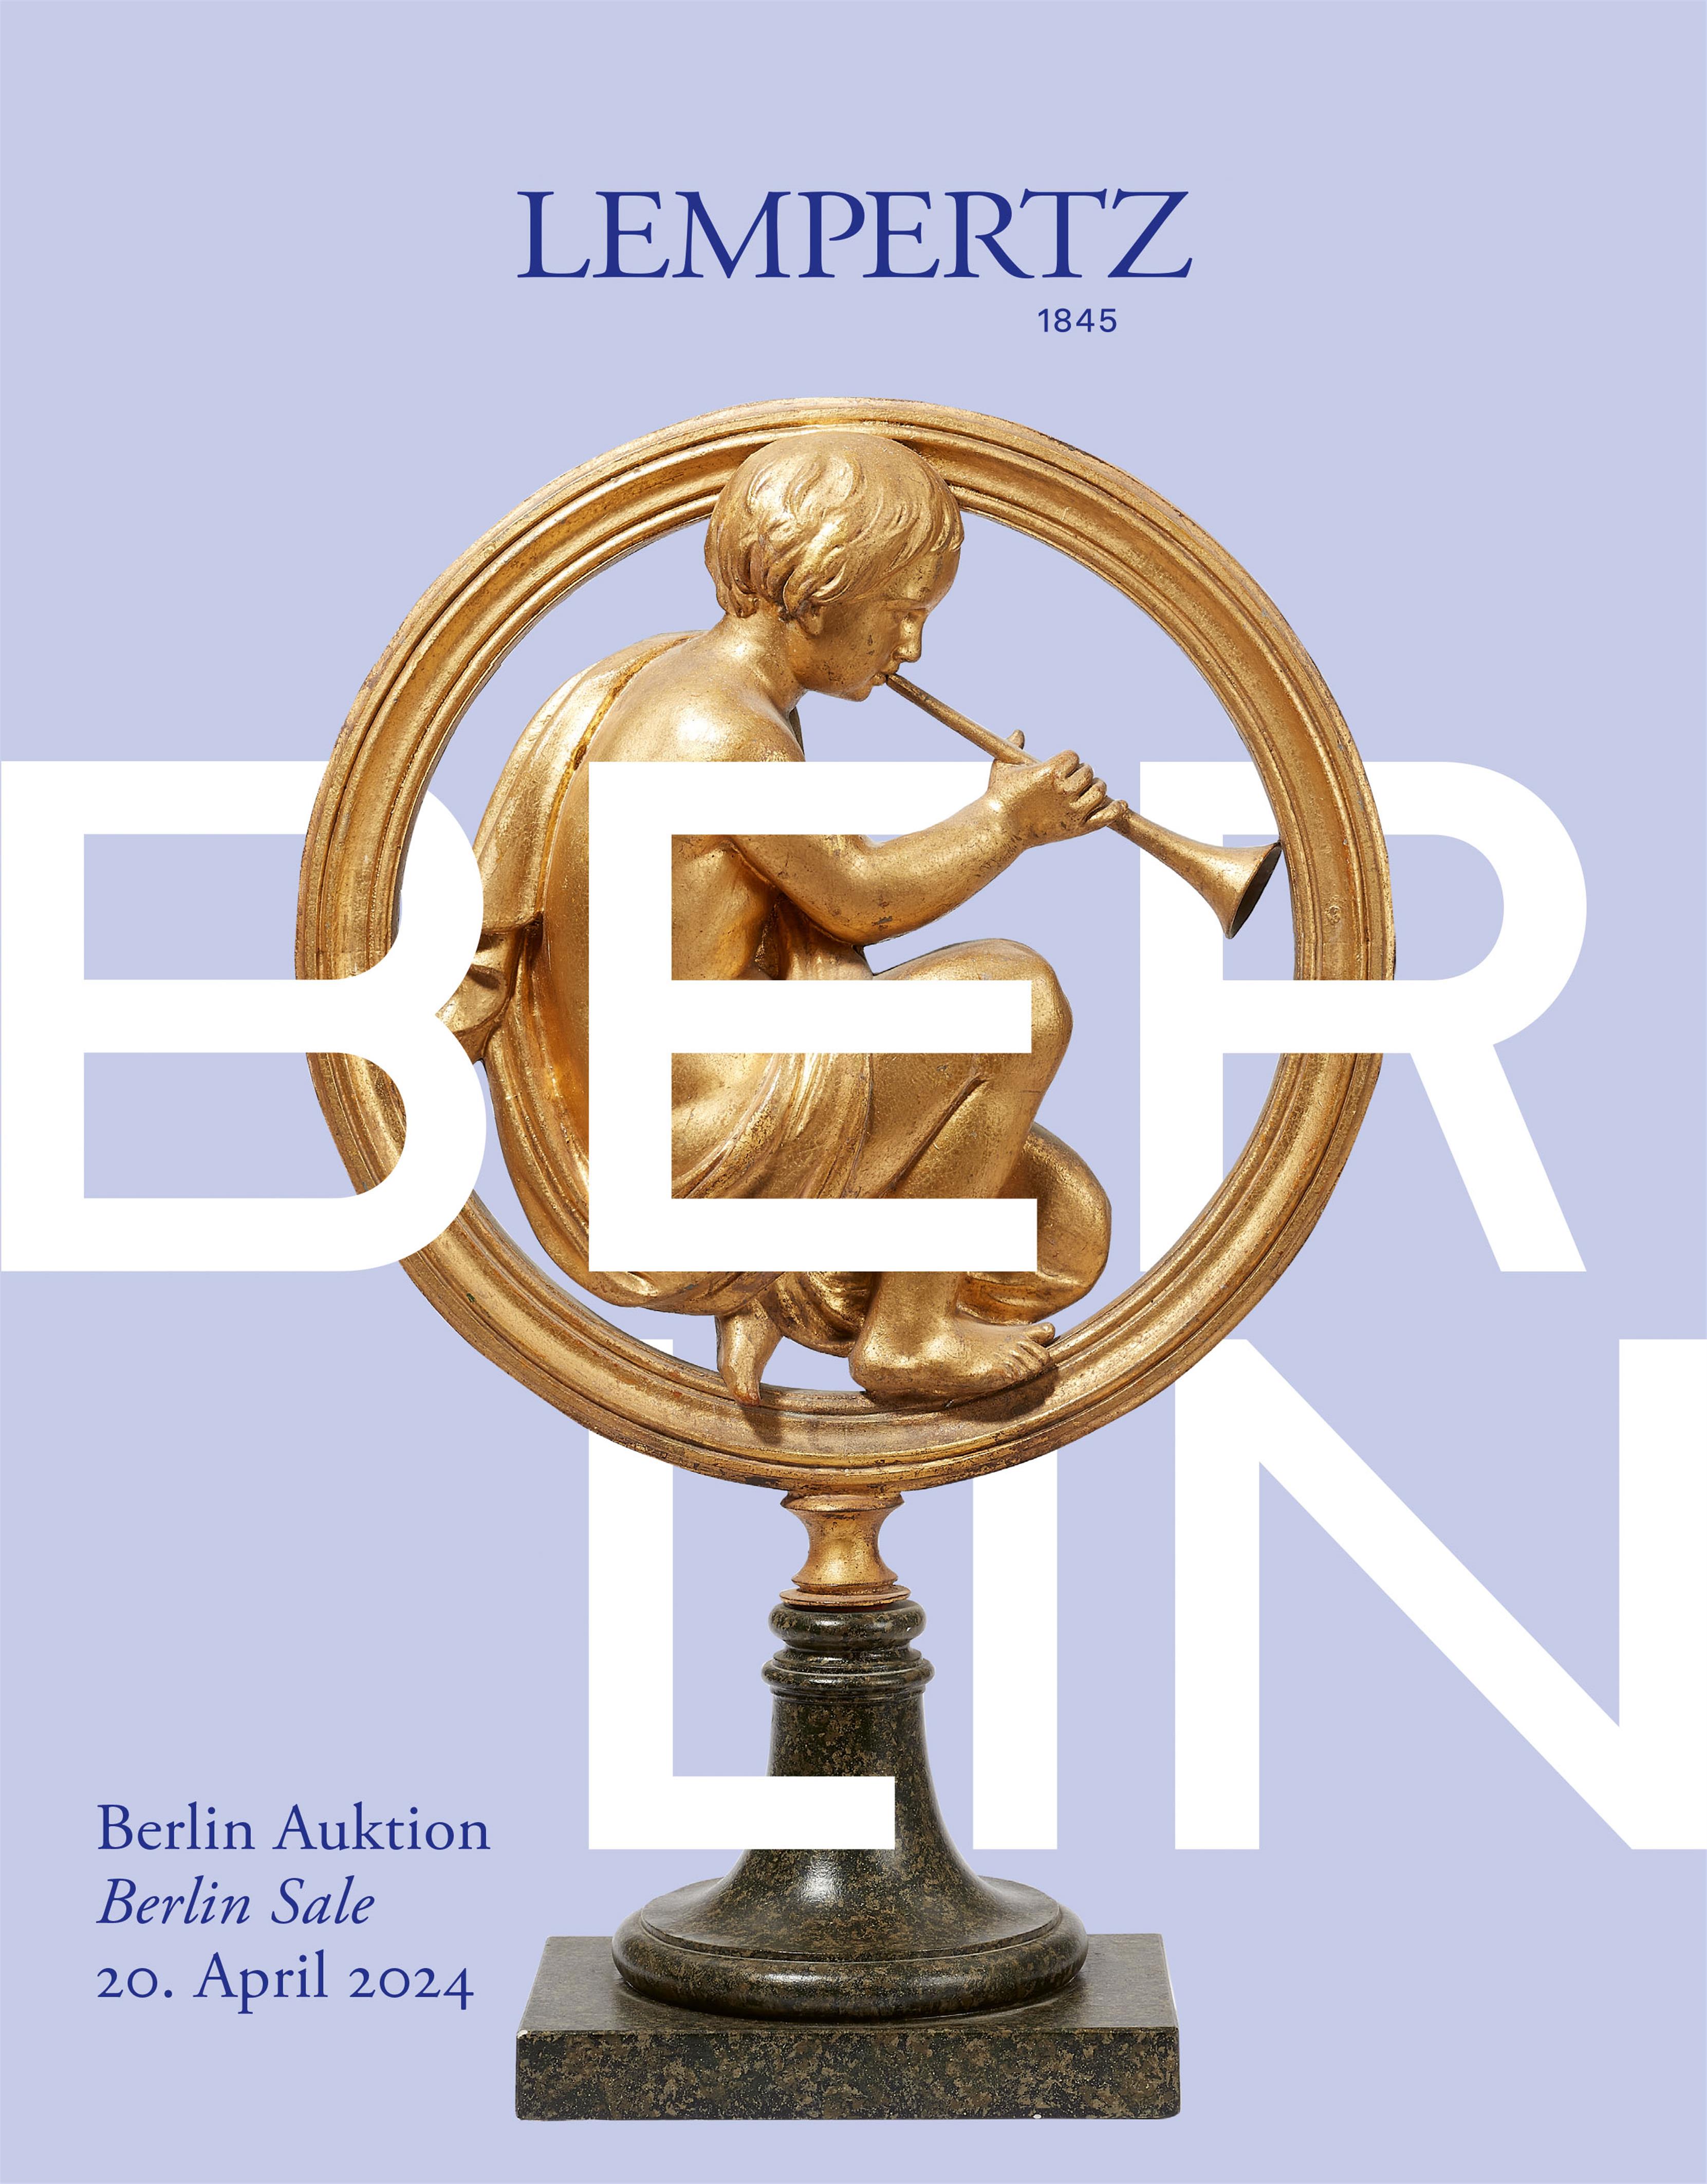 Auktionskatalog - Berlin-Auktion - Online Katalog - Auktion 1242 – Ersteigern Sie hochwertige Kunst in der nächsten Lempertz-Auktion!